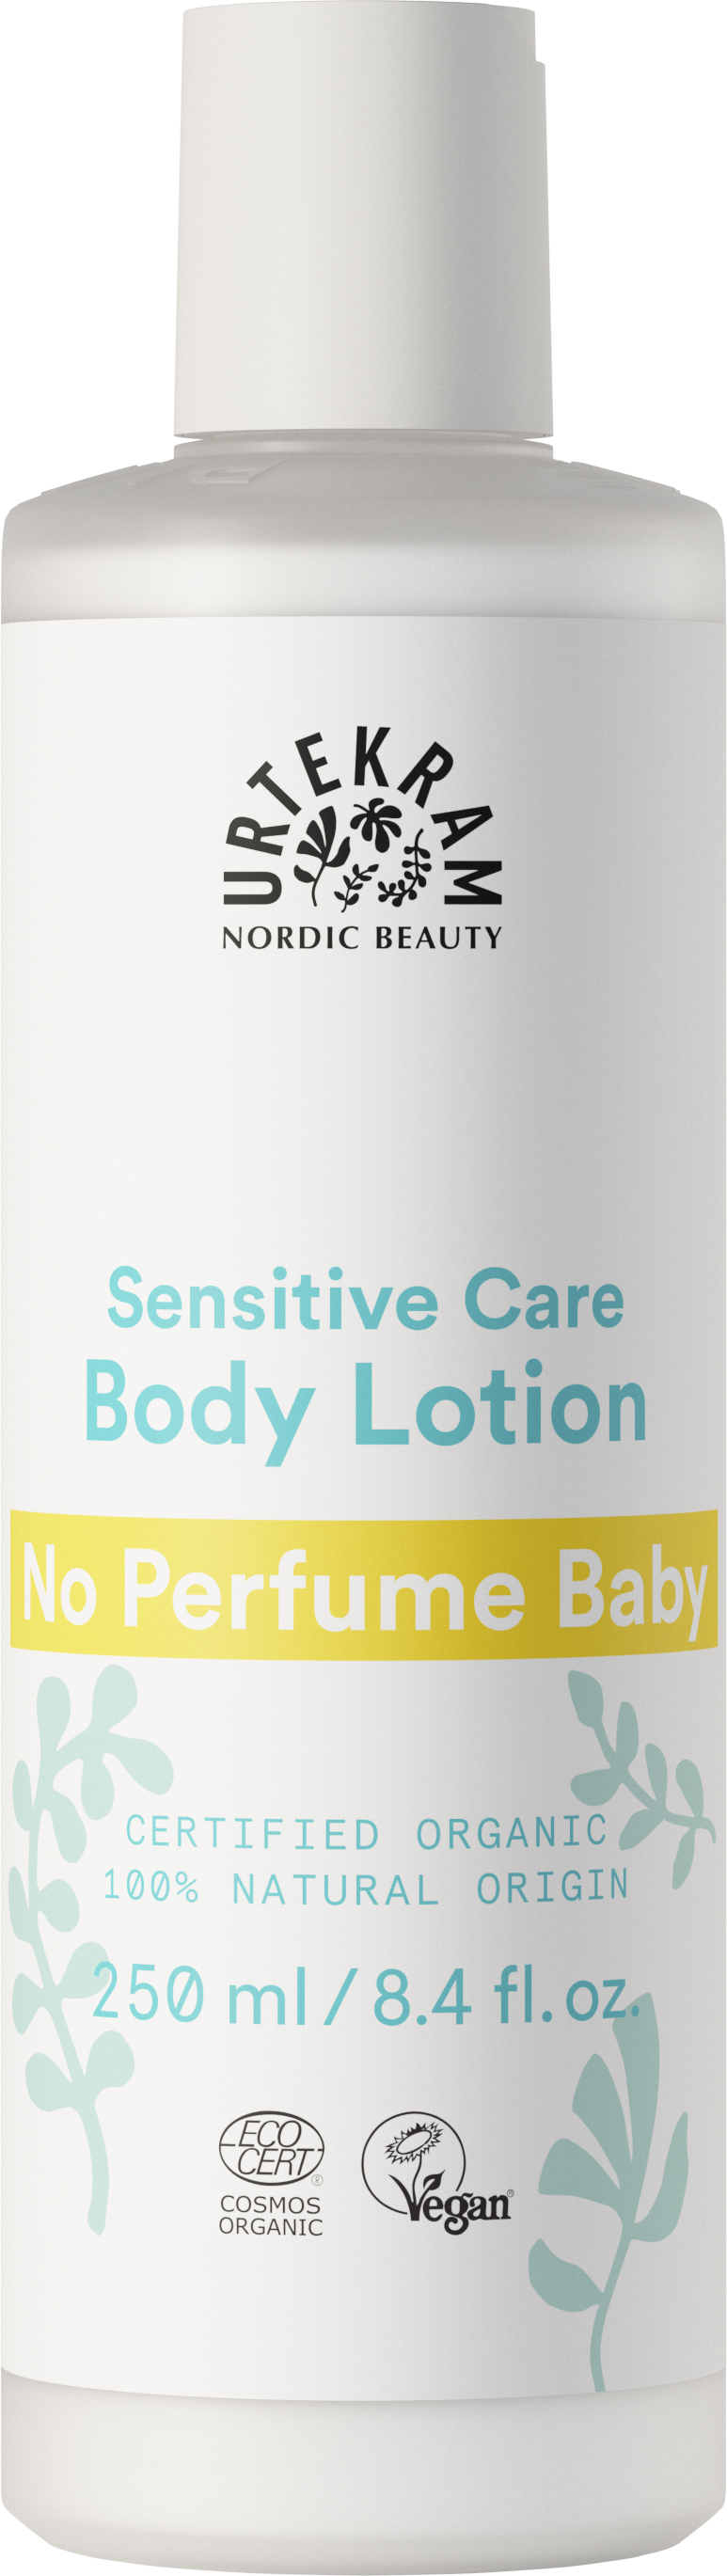 No Perfume Baby Body Lotion - Urtekram